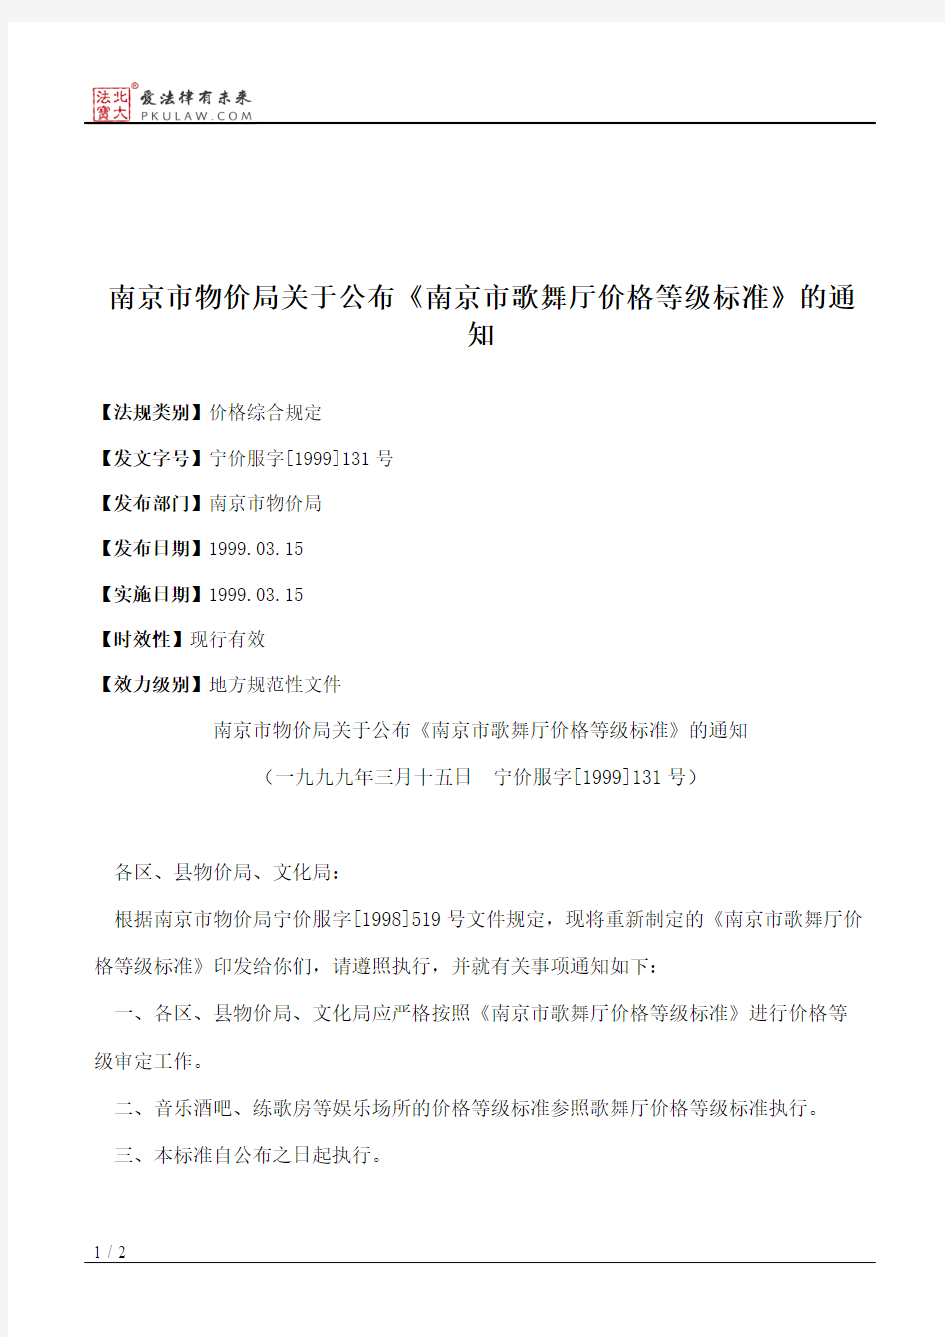 南京市物价局关于公布《南京市歌舞厅价格等级标准》的通知